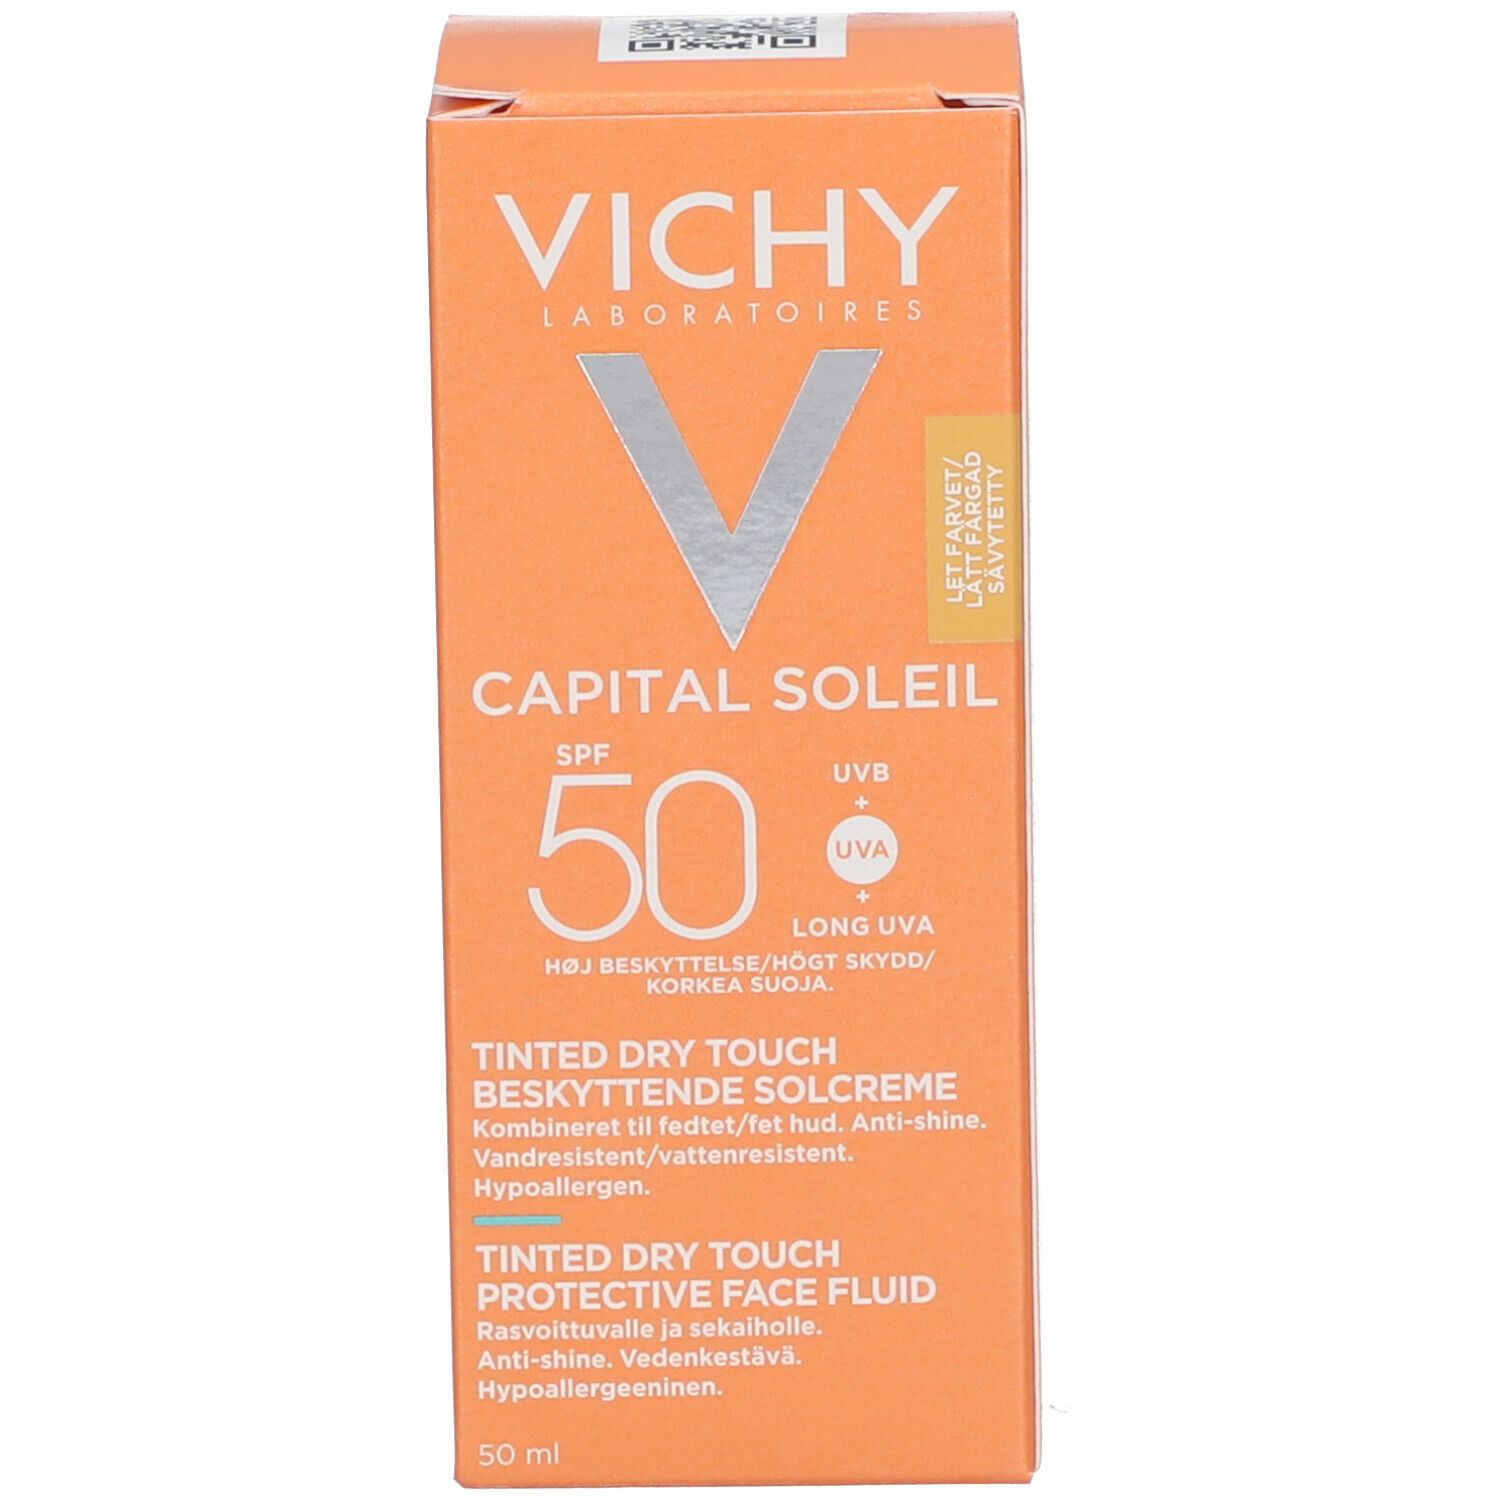 VICHY Capital Soleil BB émulsion toucher sec teintée SPF50 Tube 50ml